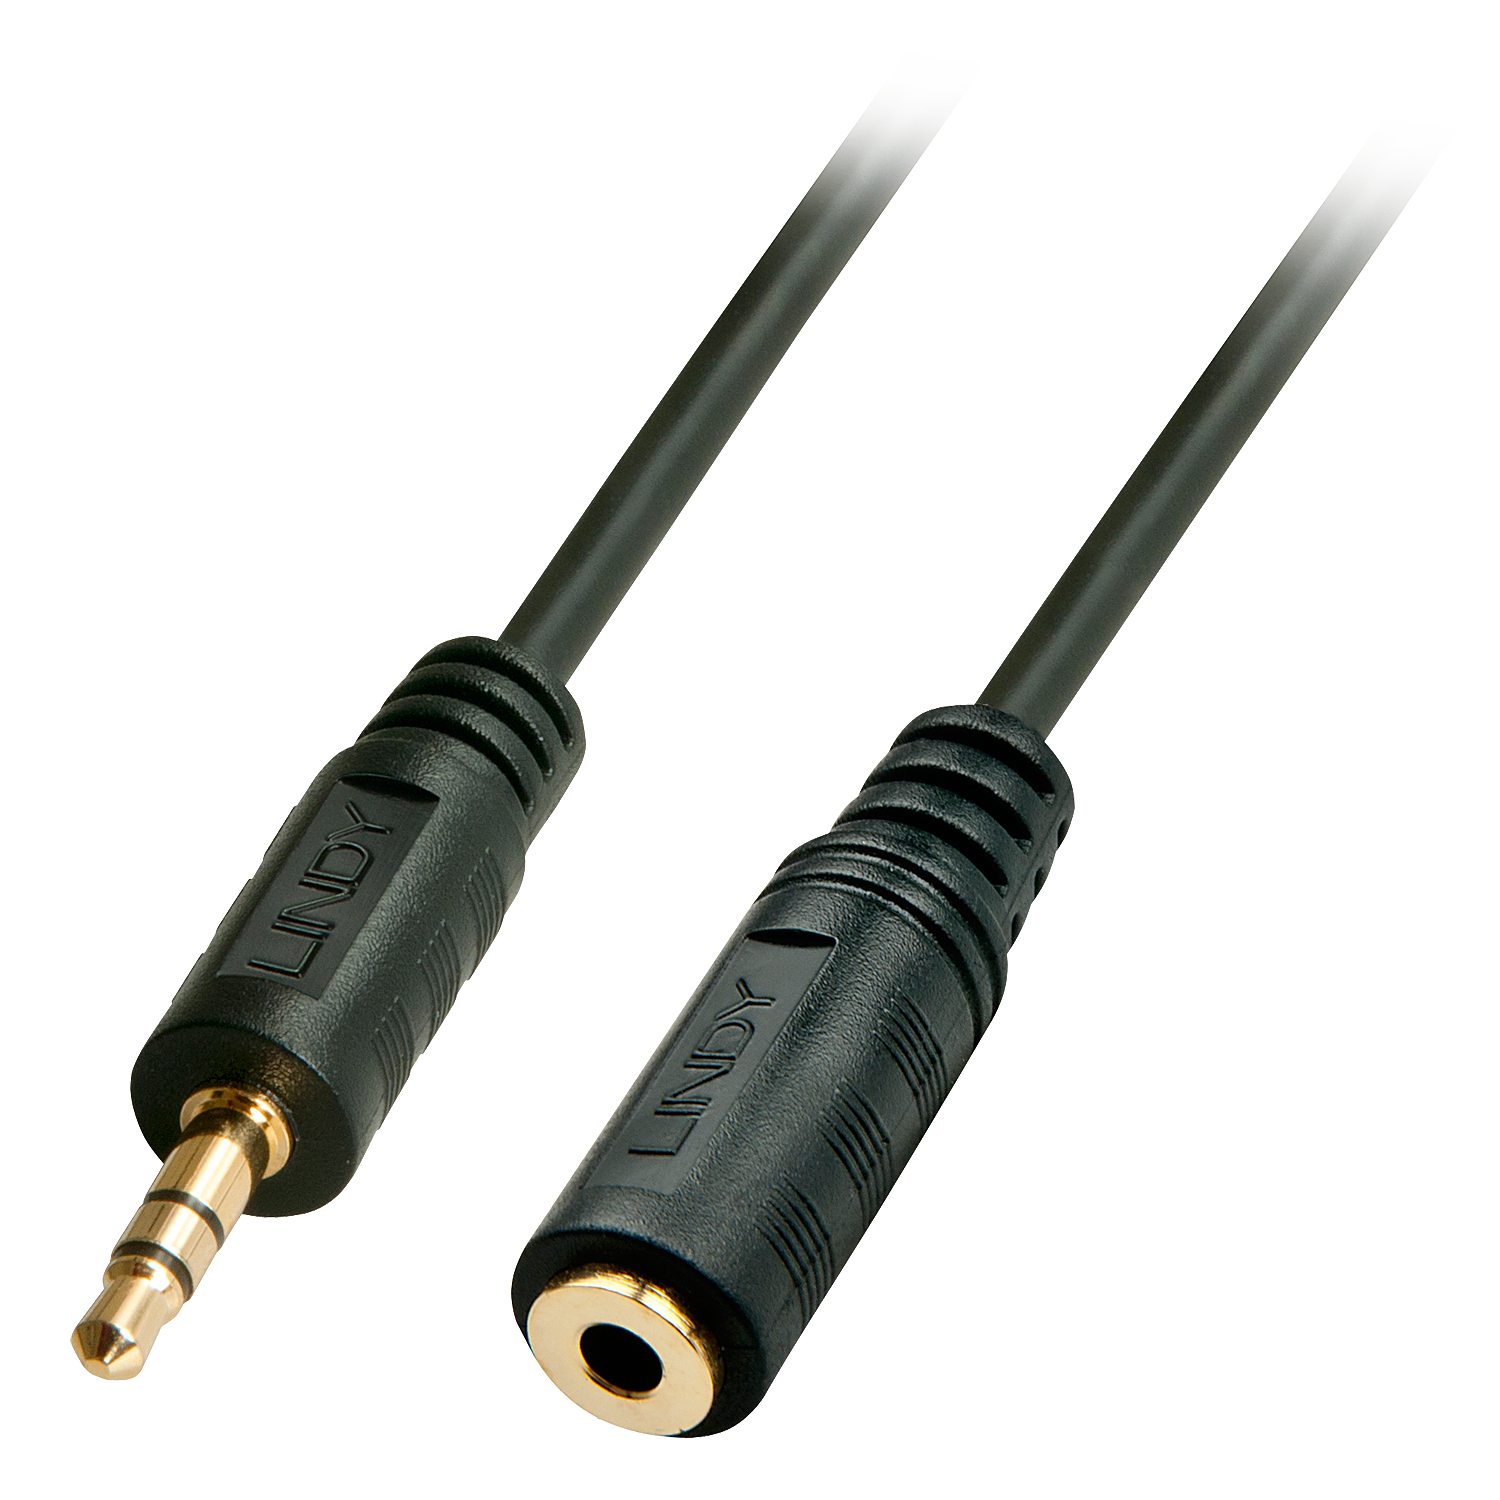 Photos - Cable (video, audio, USB) Lindy 10m Premium Audio 3.5mm Jack Extension Cable 35656 